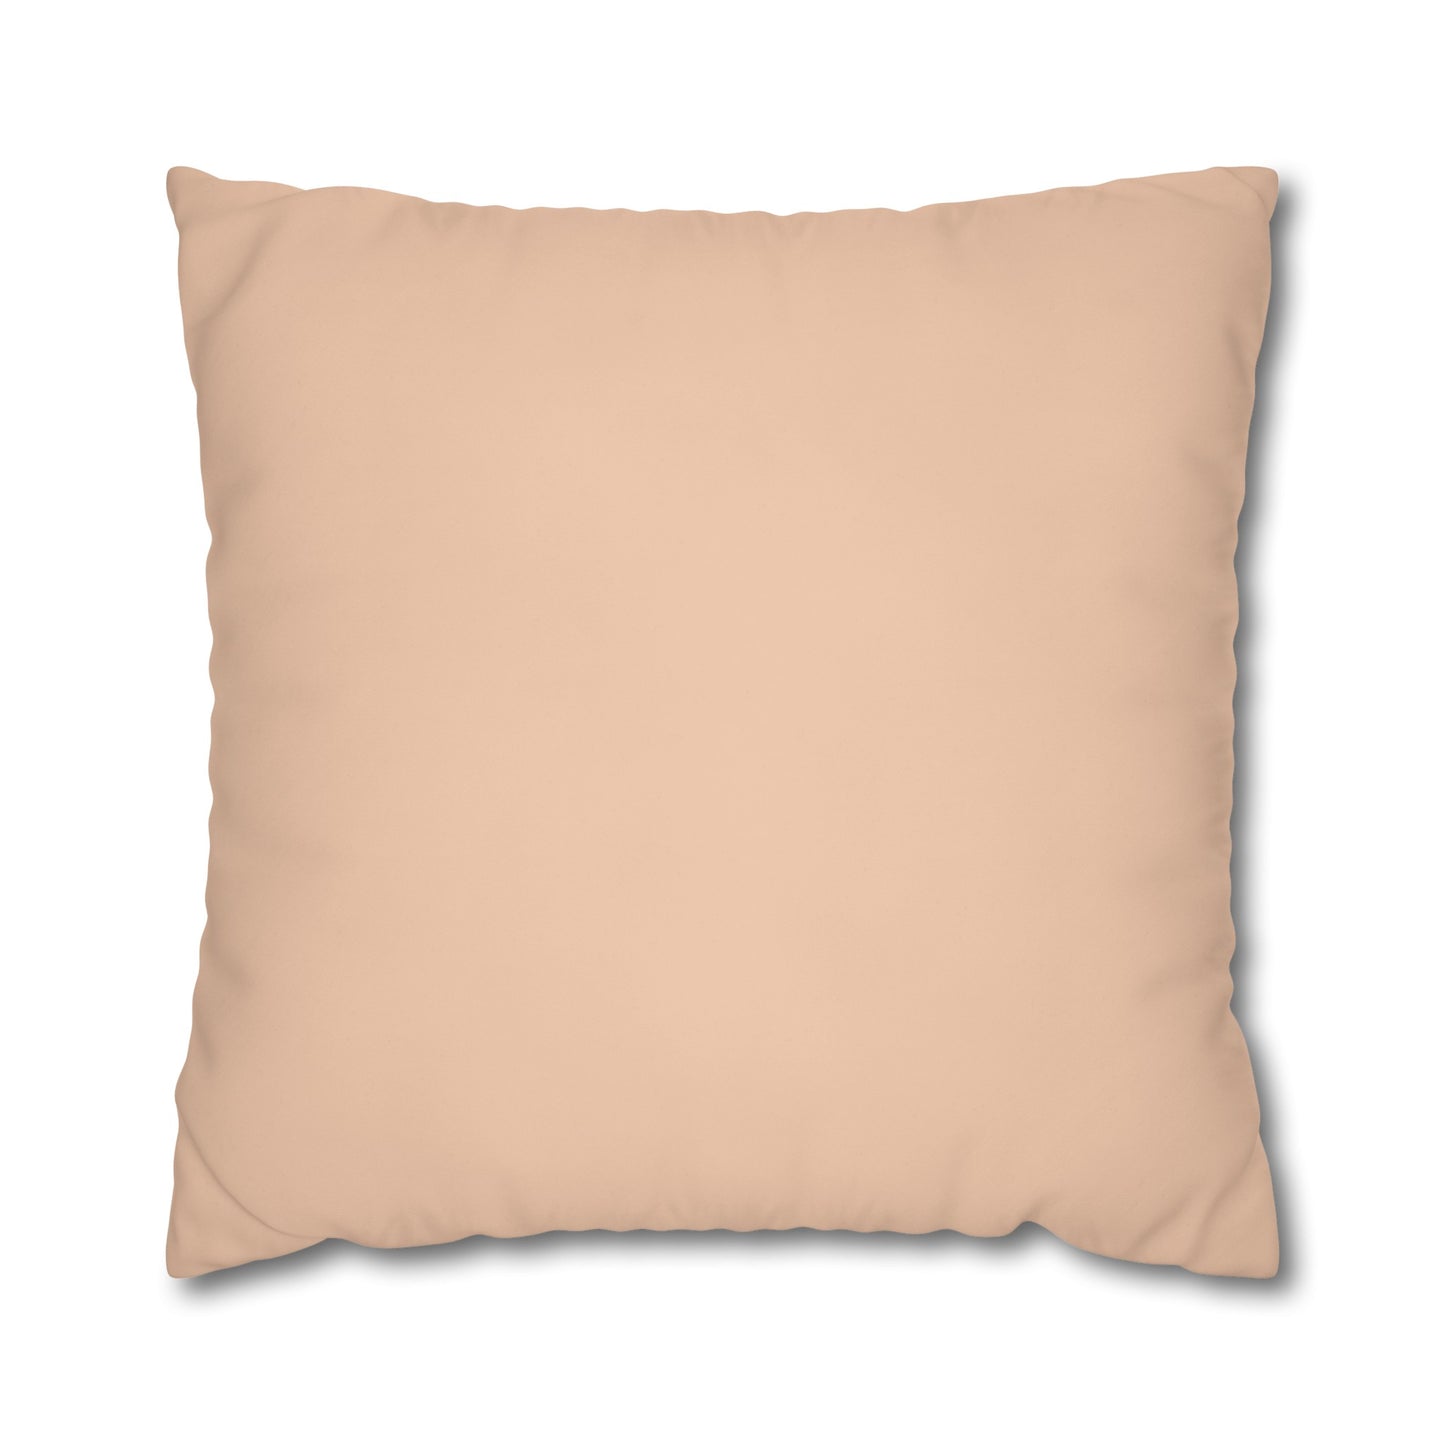 Peach Euro Pillow Cover